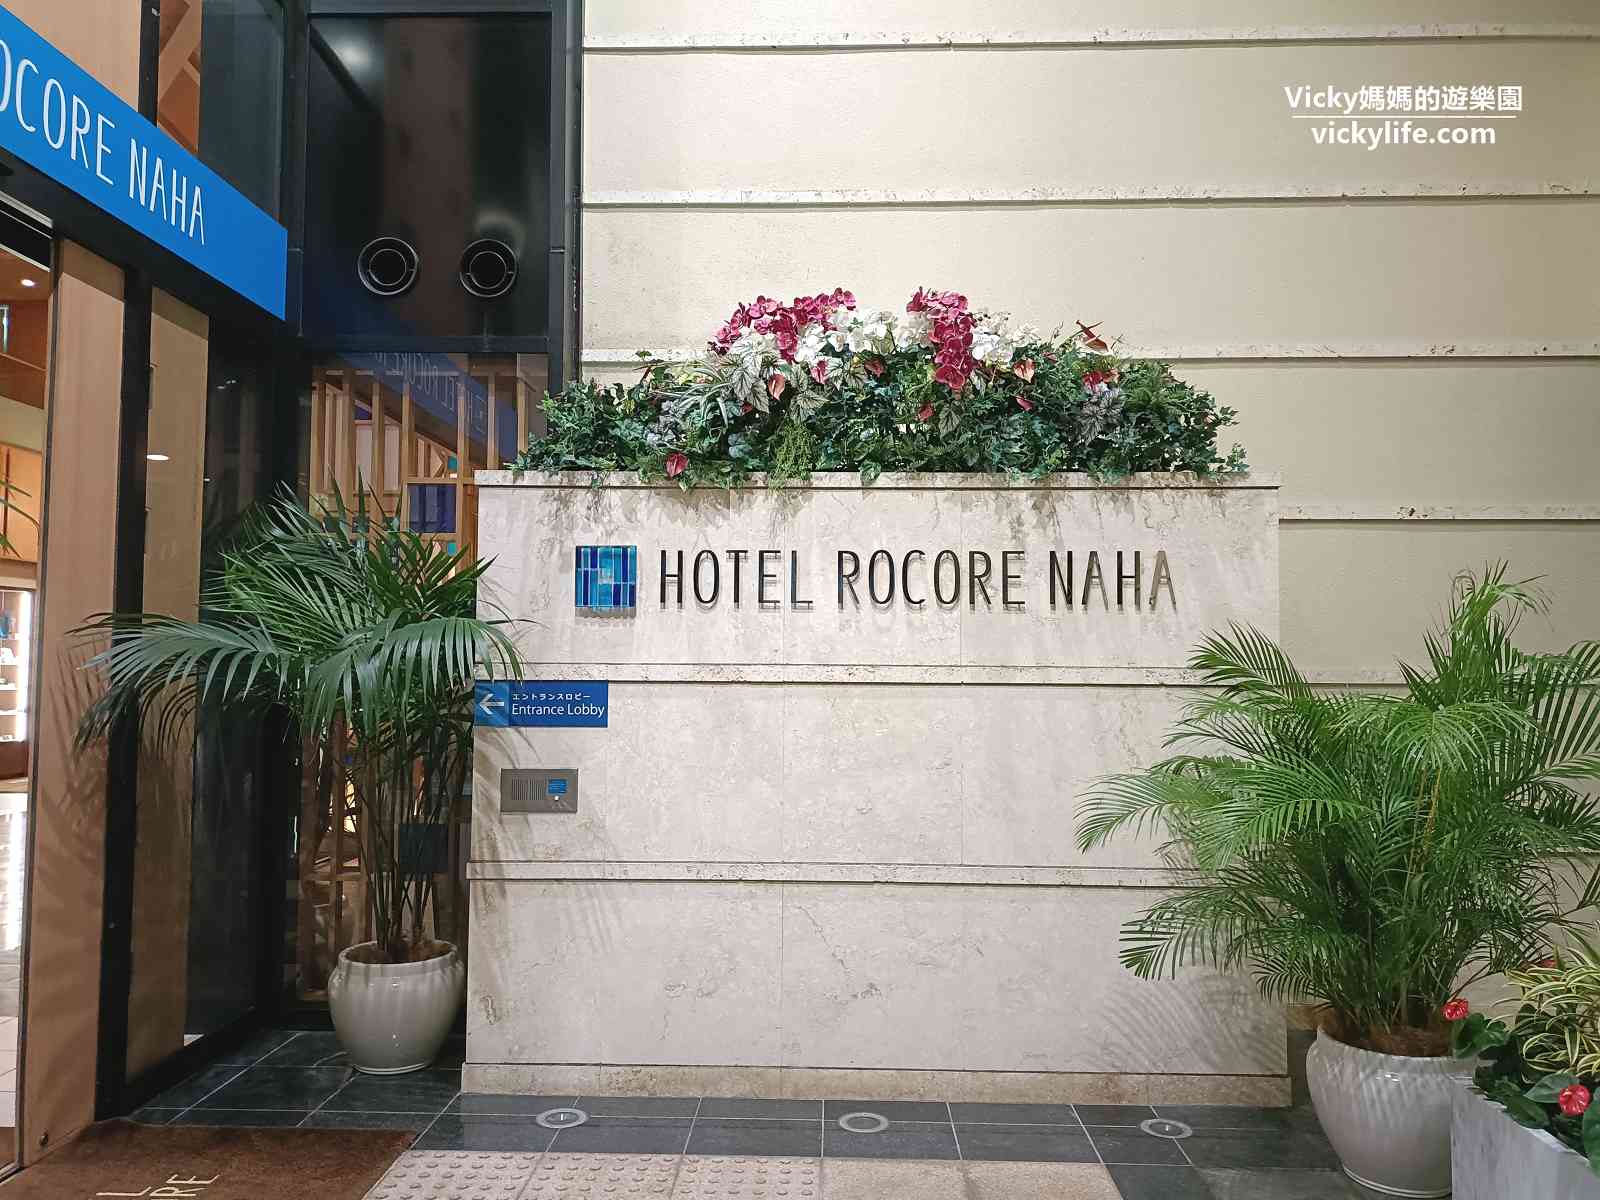 沖繩住宿推薦︱那霸羅列科爾飯店 Hotel Rocore Naha：30秒到國際通購物血拼，琉貿百貨、藥妝店、琉球之牛走路就到